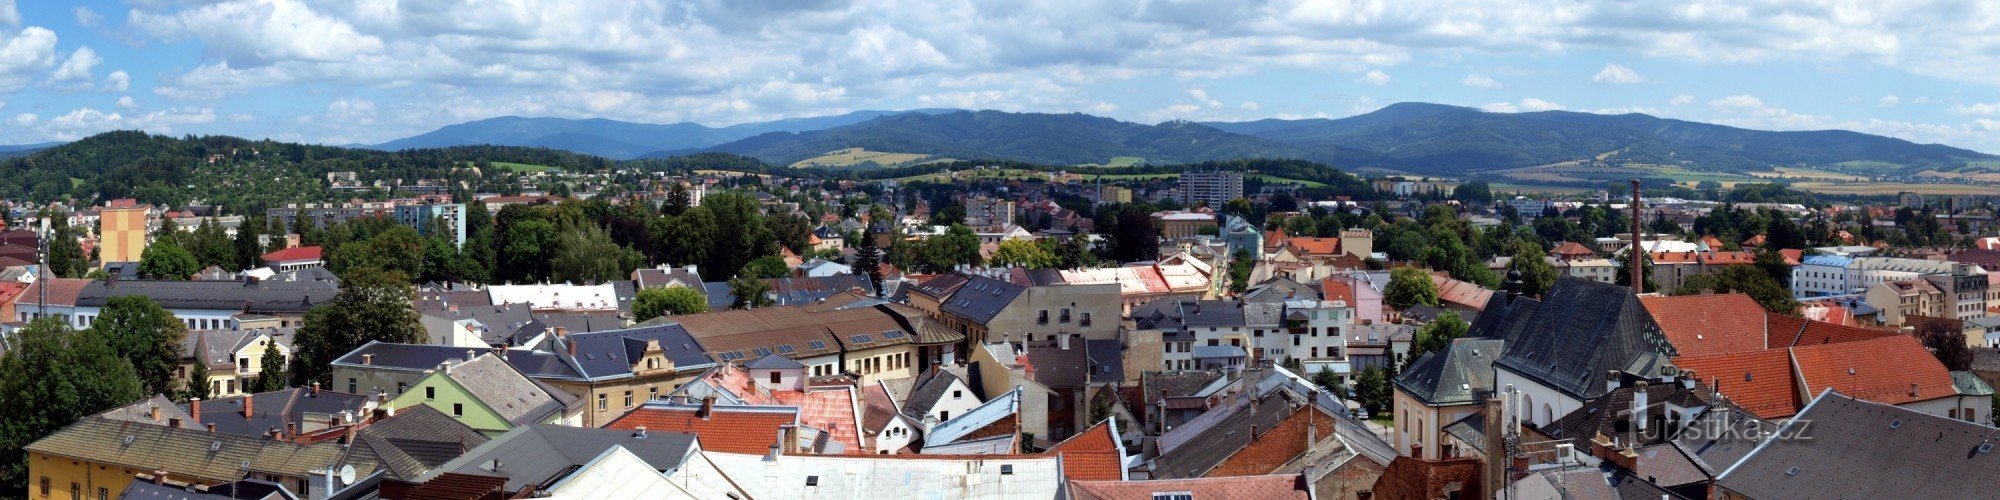 Άποψη της πόλης και των βουνών Jeseníky από τον πύργο του δημαρχείου